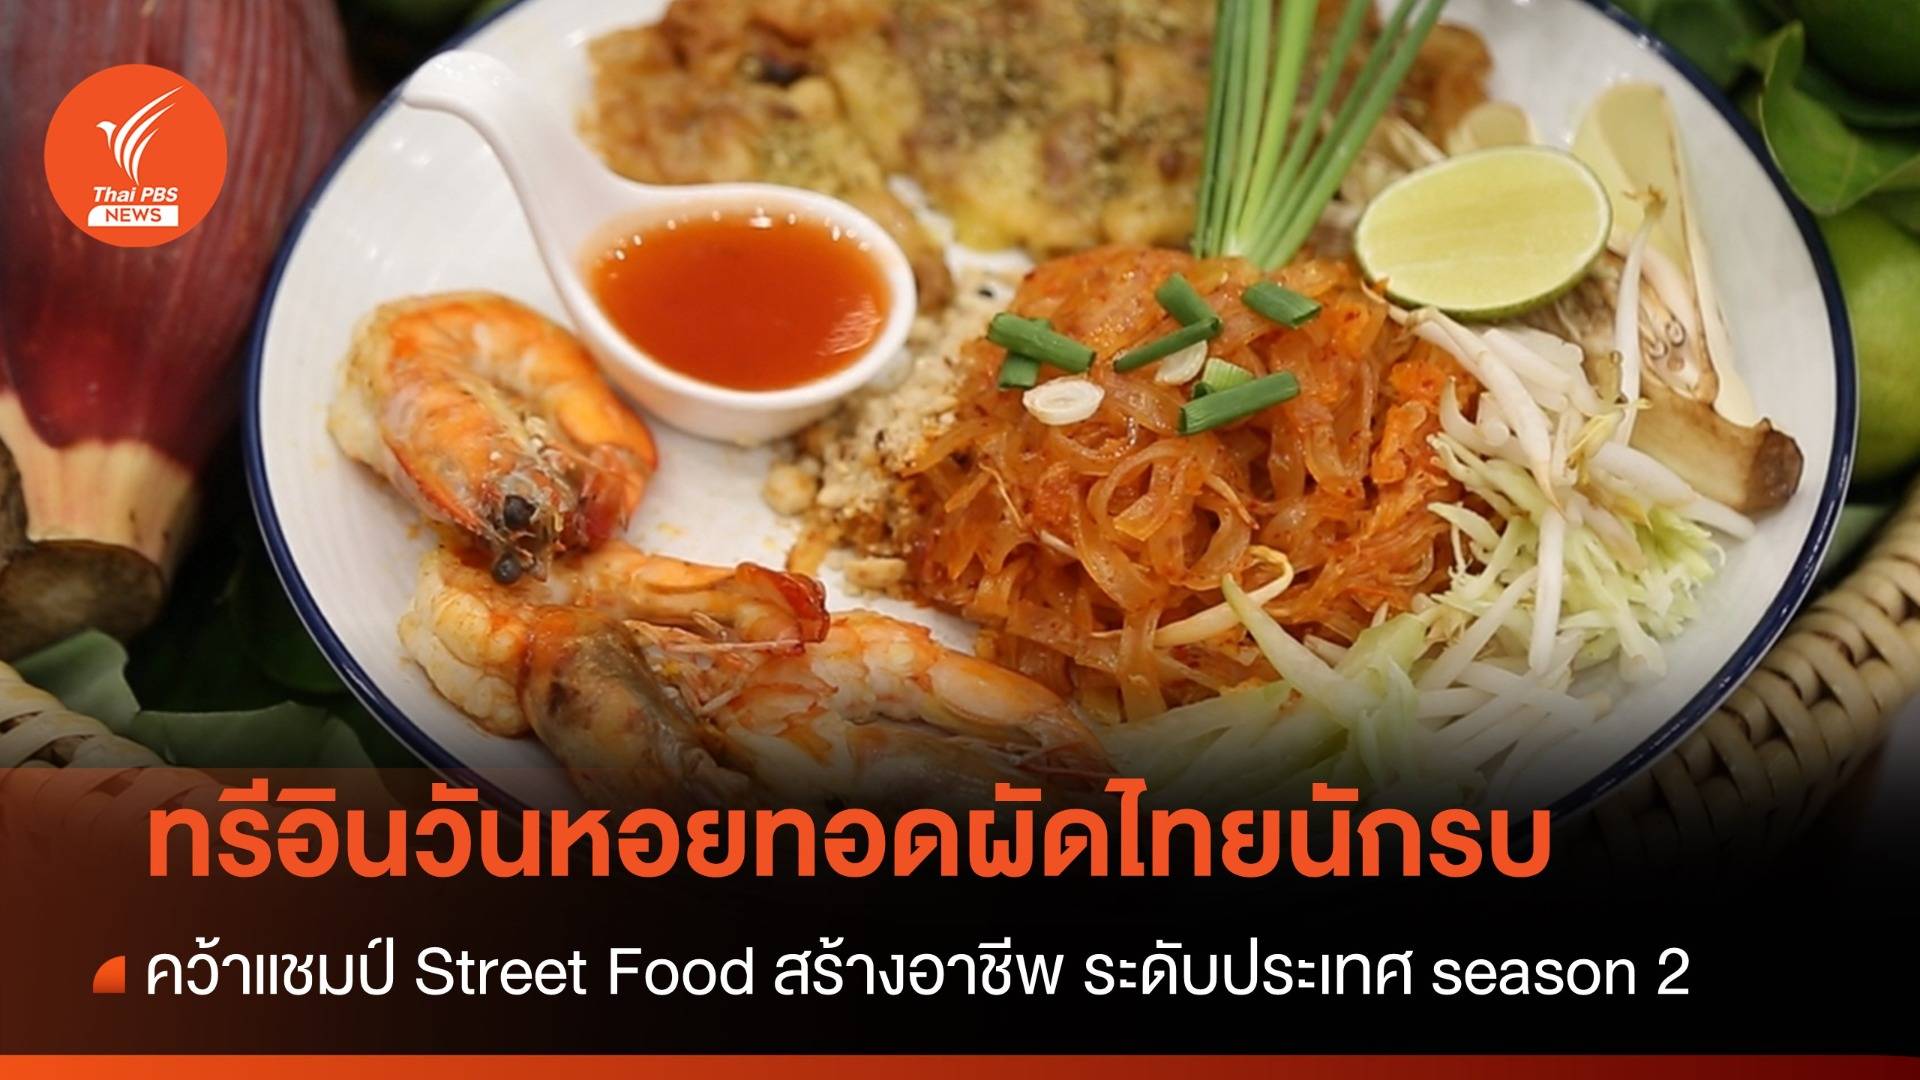 “ทรีอินวันหอยทอดผัดไทยนักรบ” คว้าแชมป์ Street Food สร้างอาชีพ ระดับประเทศ season 2